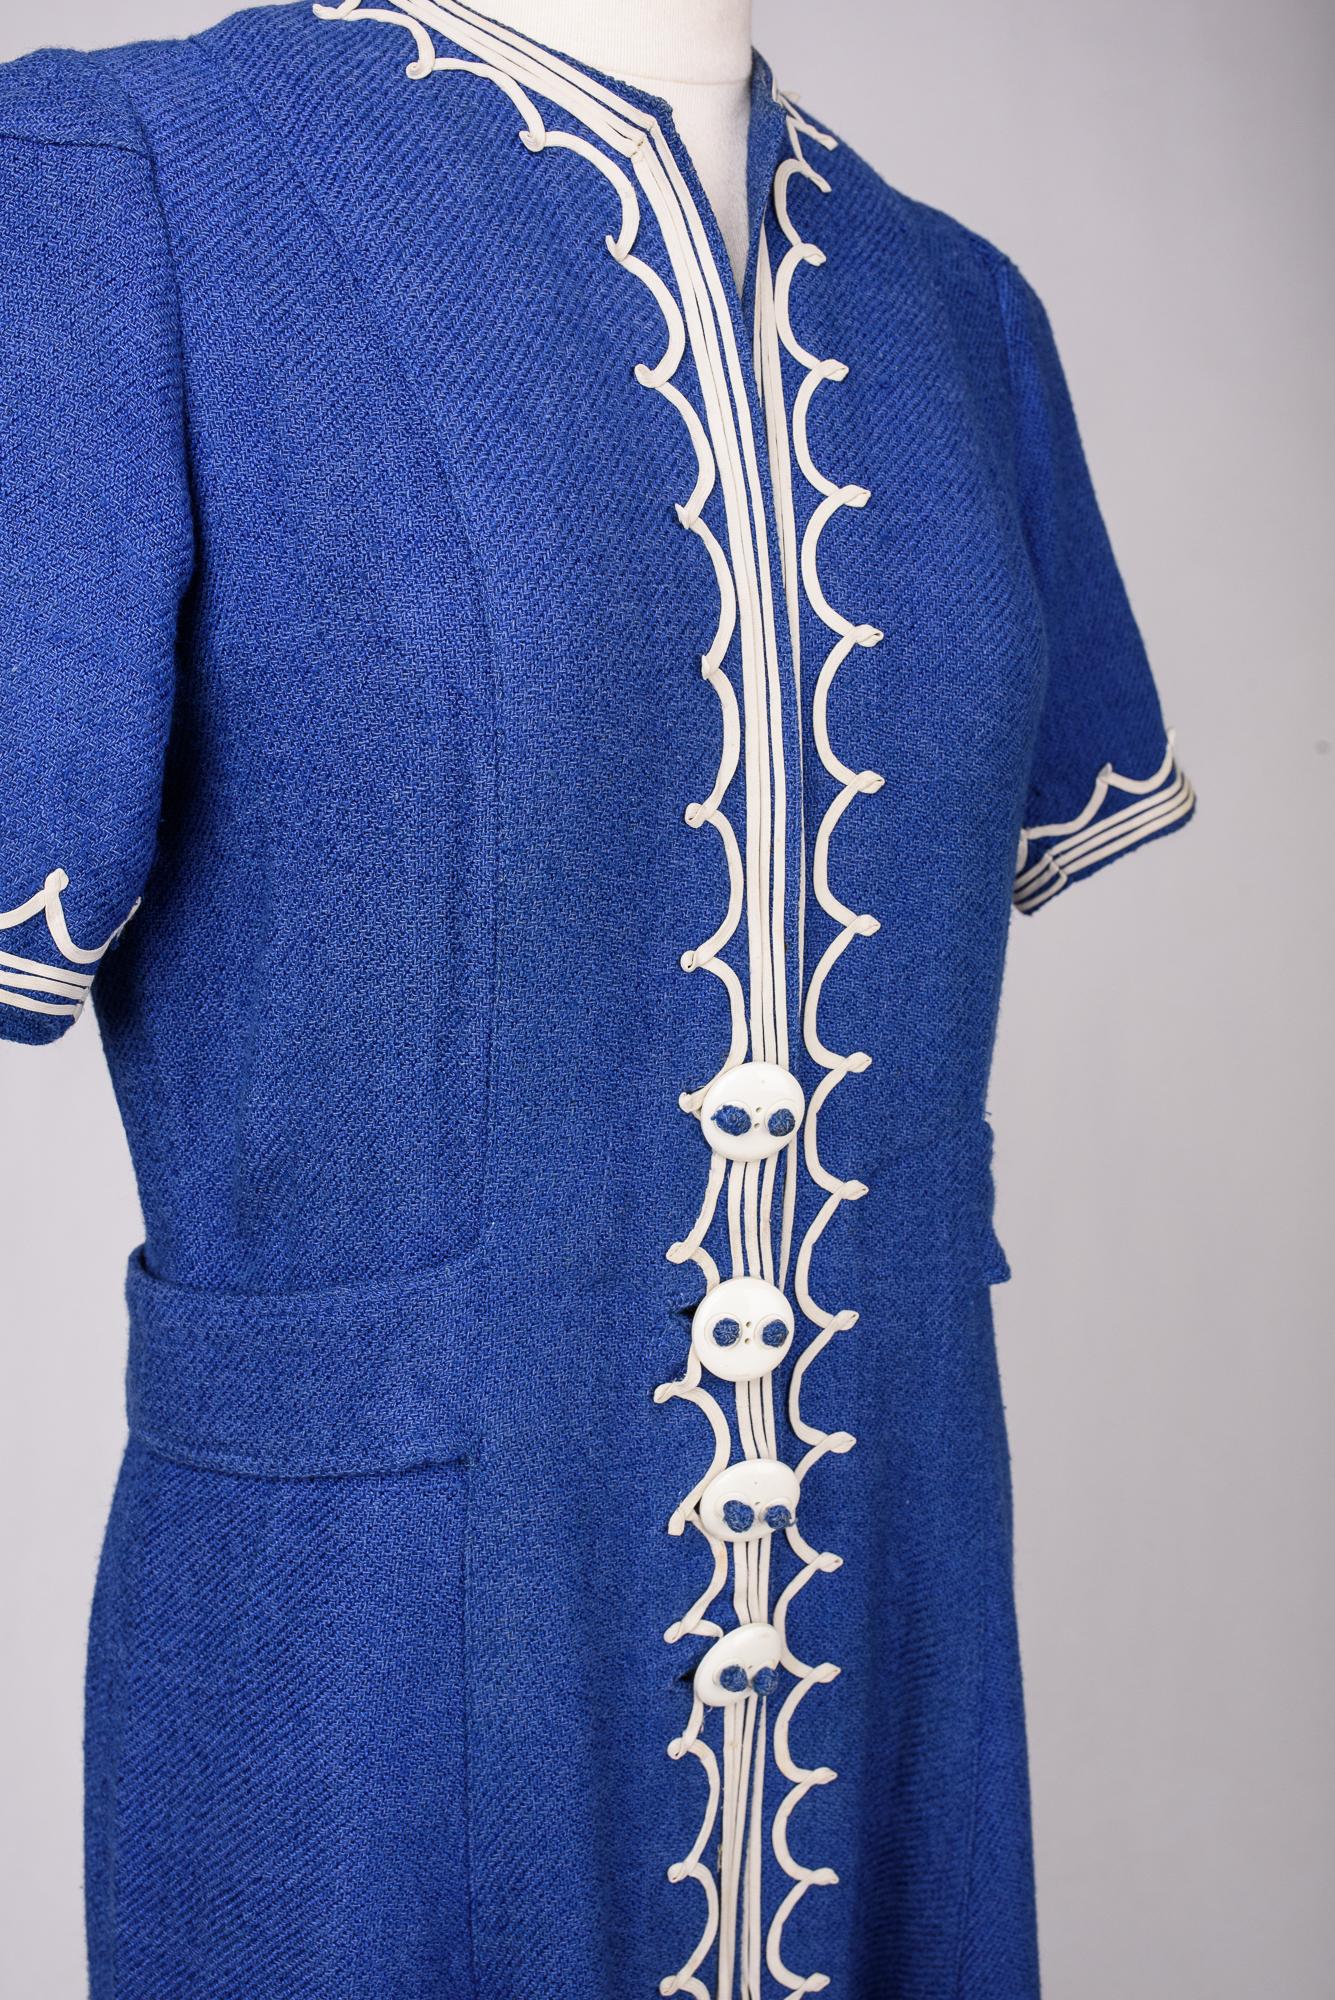 A Rare Blue Navy woollen dress by Henry à la Pensée - France Circa 1945 For Sale 10